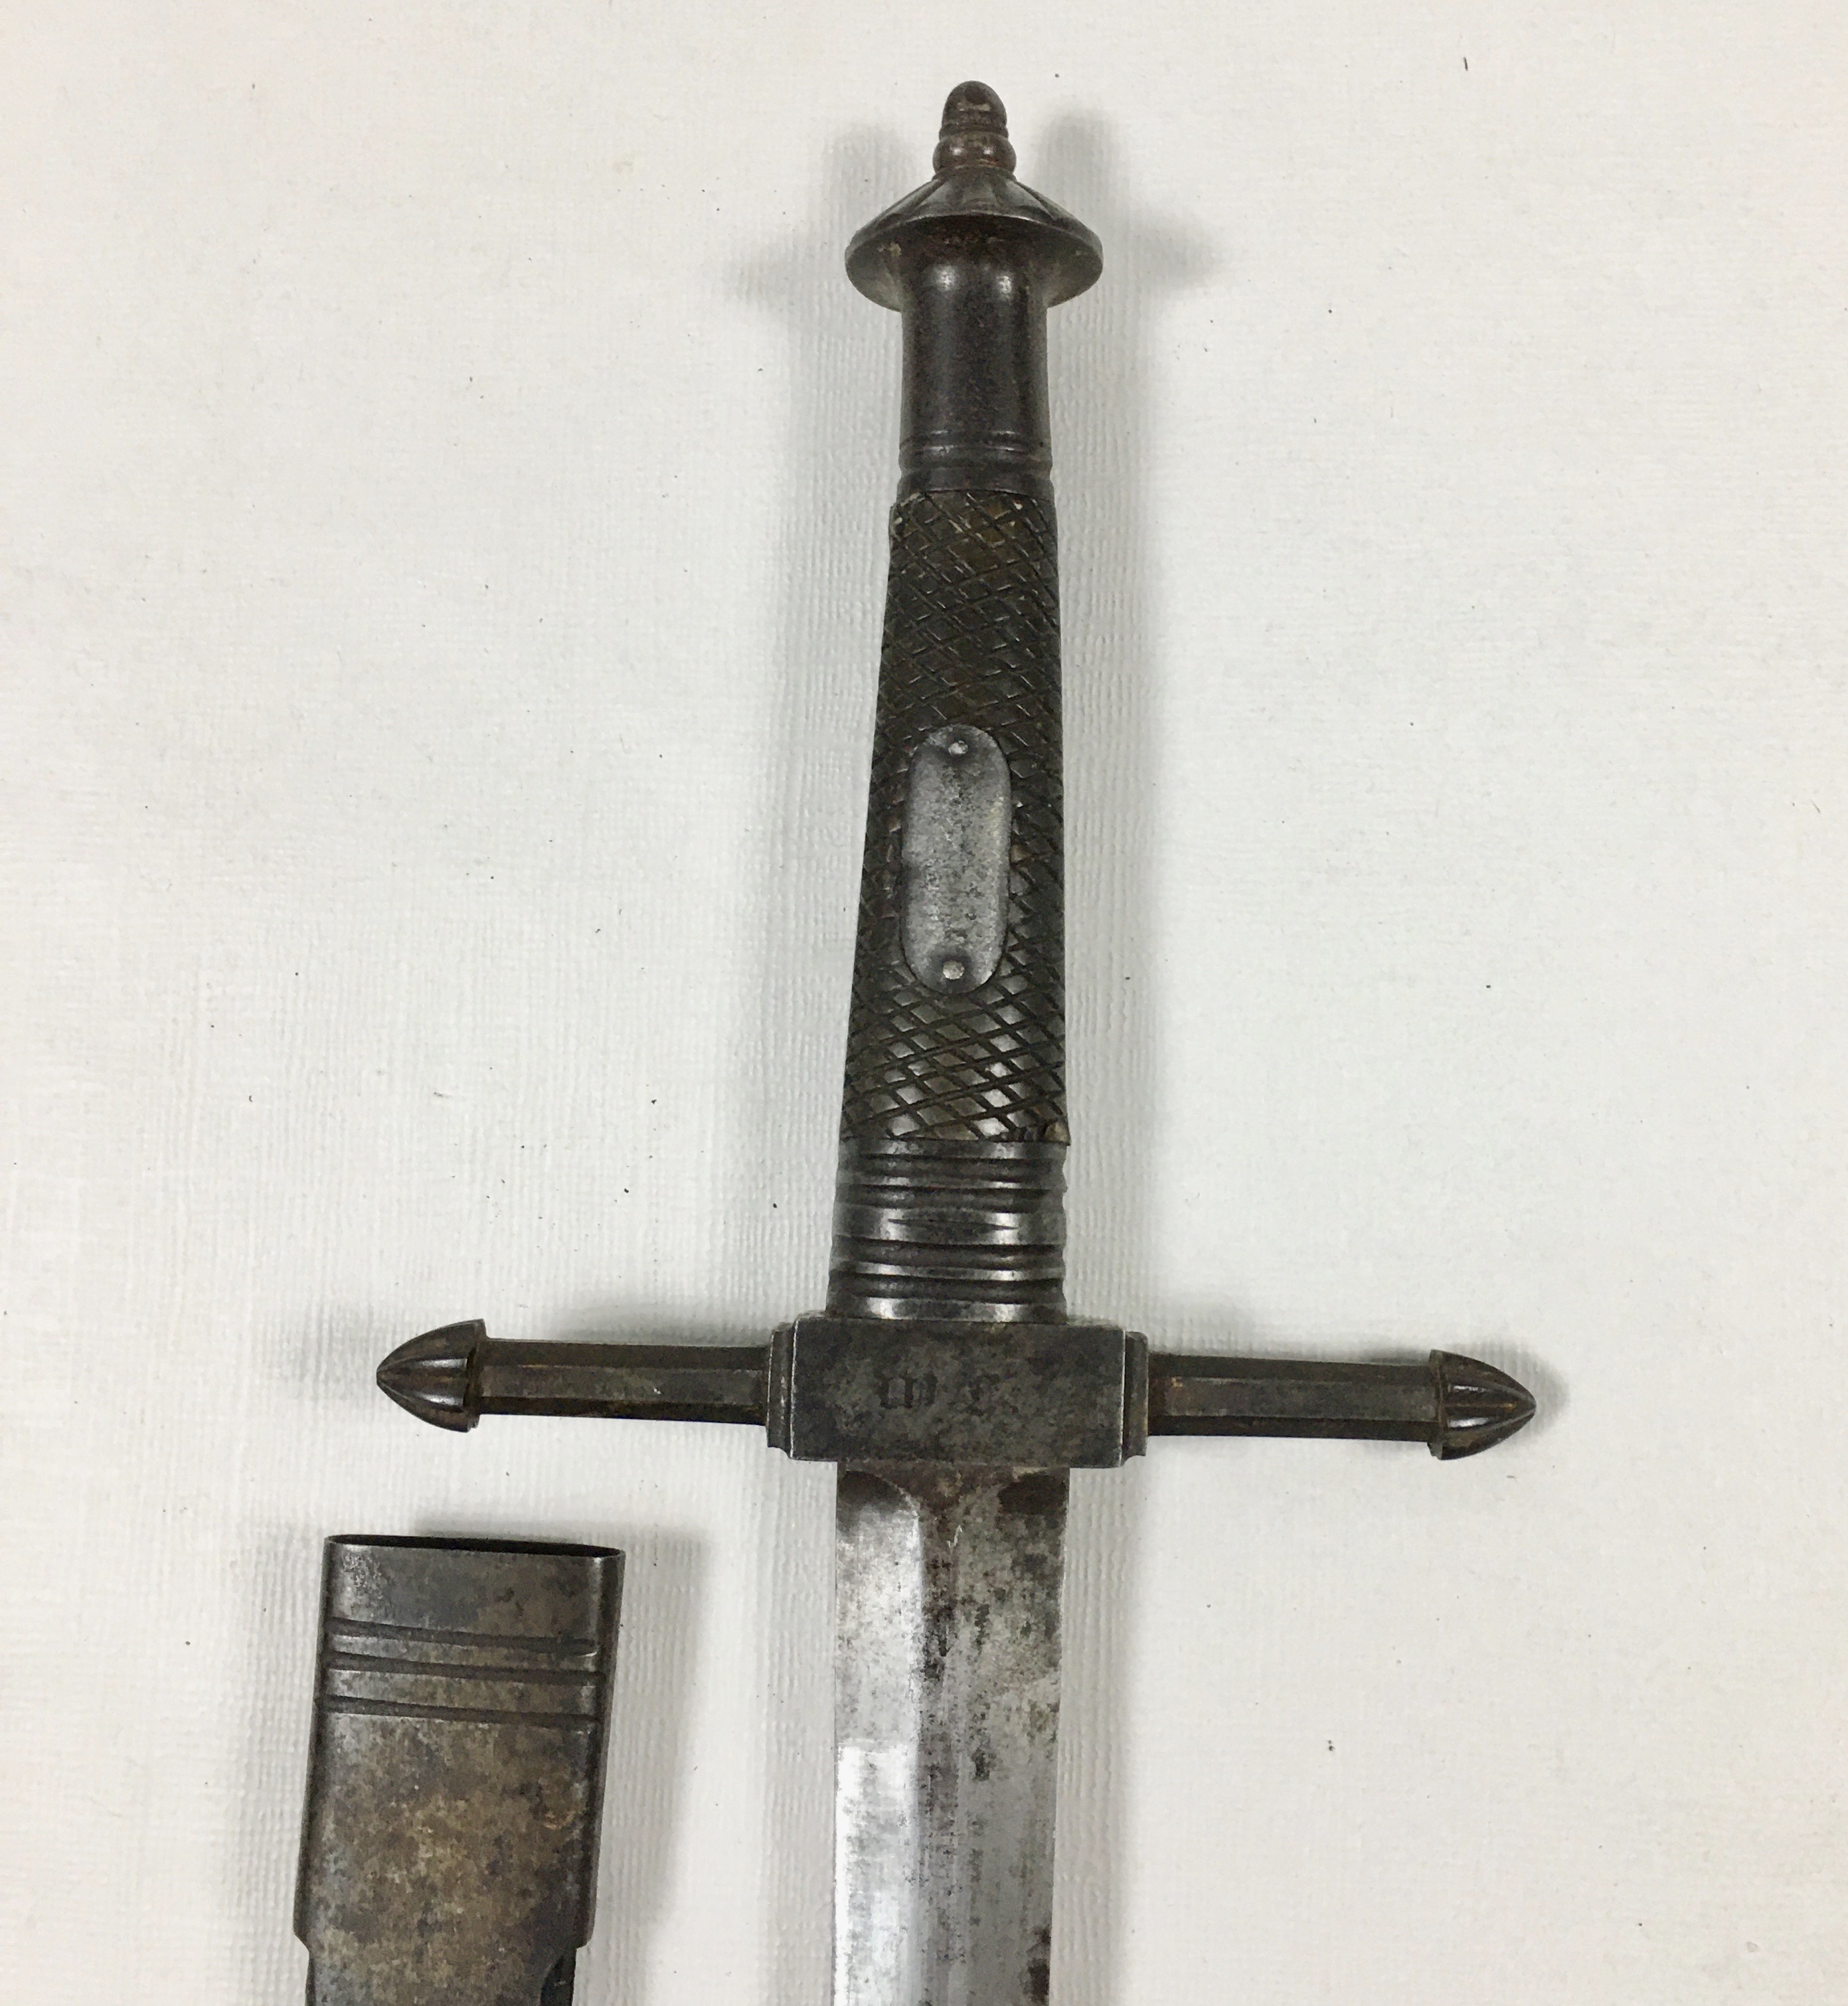 Espada de tipo civil probablemente Alemana de inicios del Siglo XVIII de estilo clásico con guarnición en acero y puño de madera cuadrillado